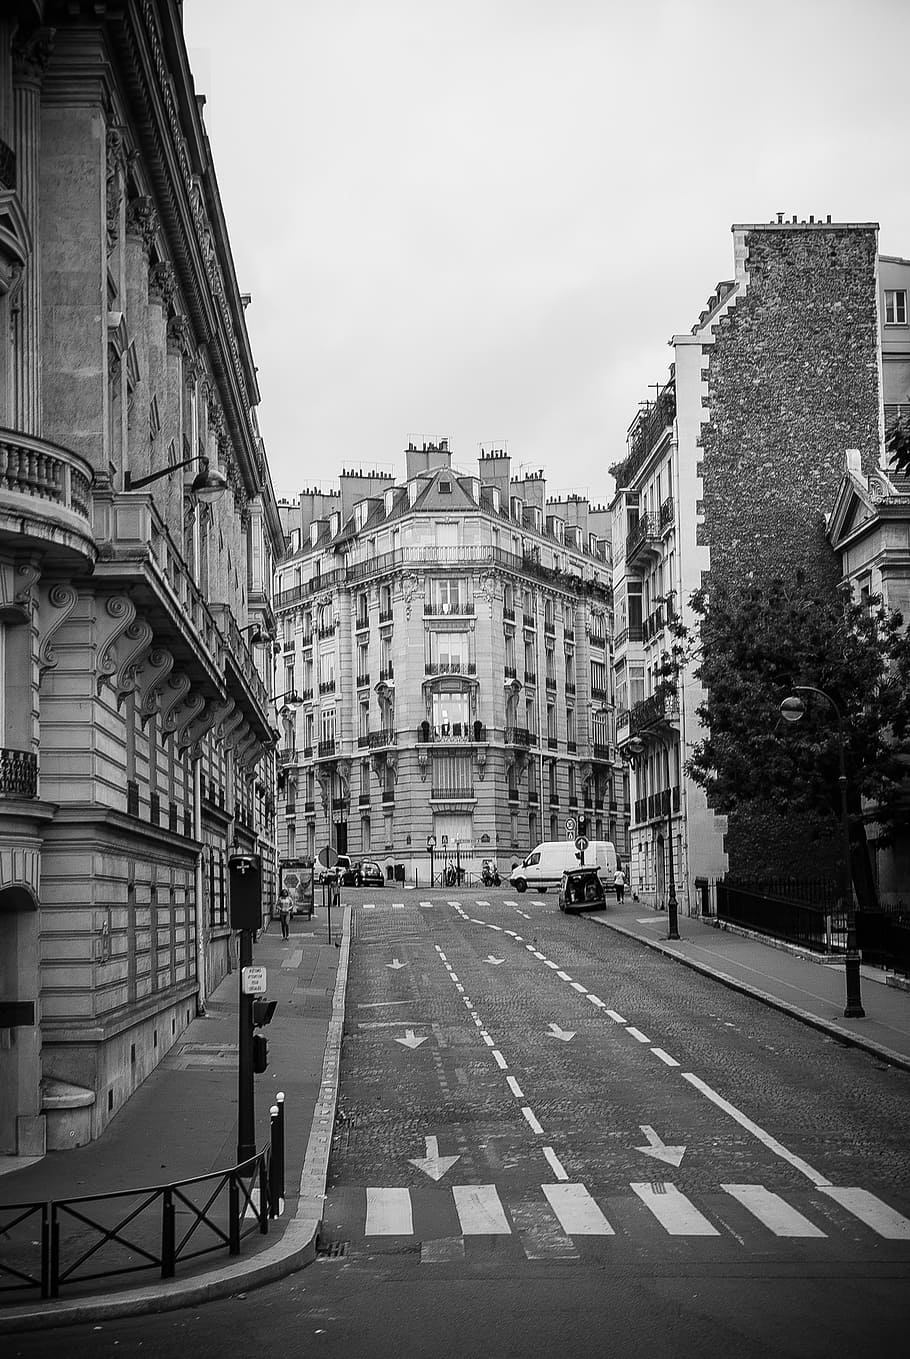 foto em escala de cinza, concreto, edifícios, ruas de paris, paris, arquitetura, preto e branco, exterior do edifício, estrutura construída, cidade